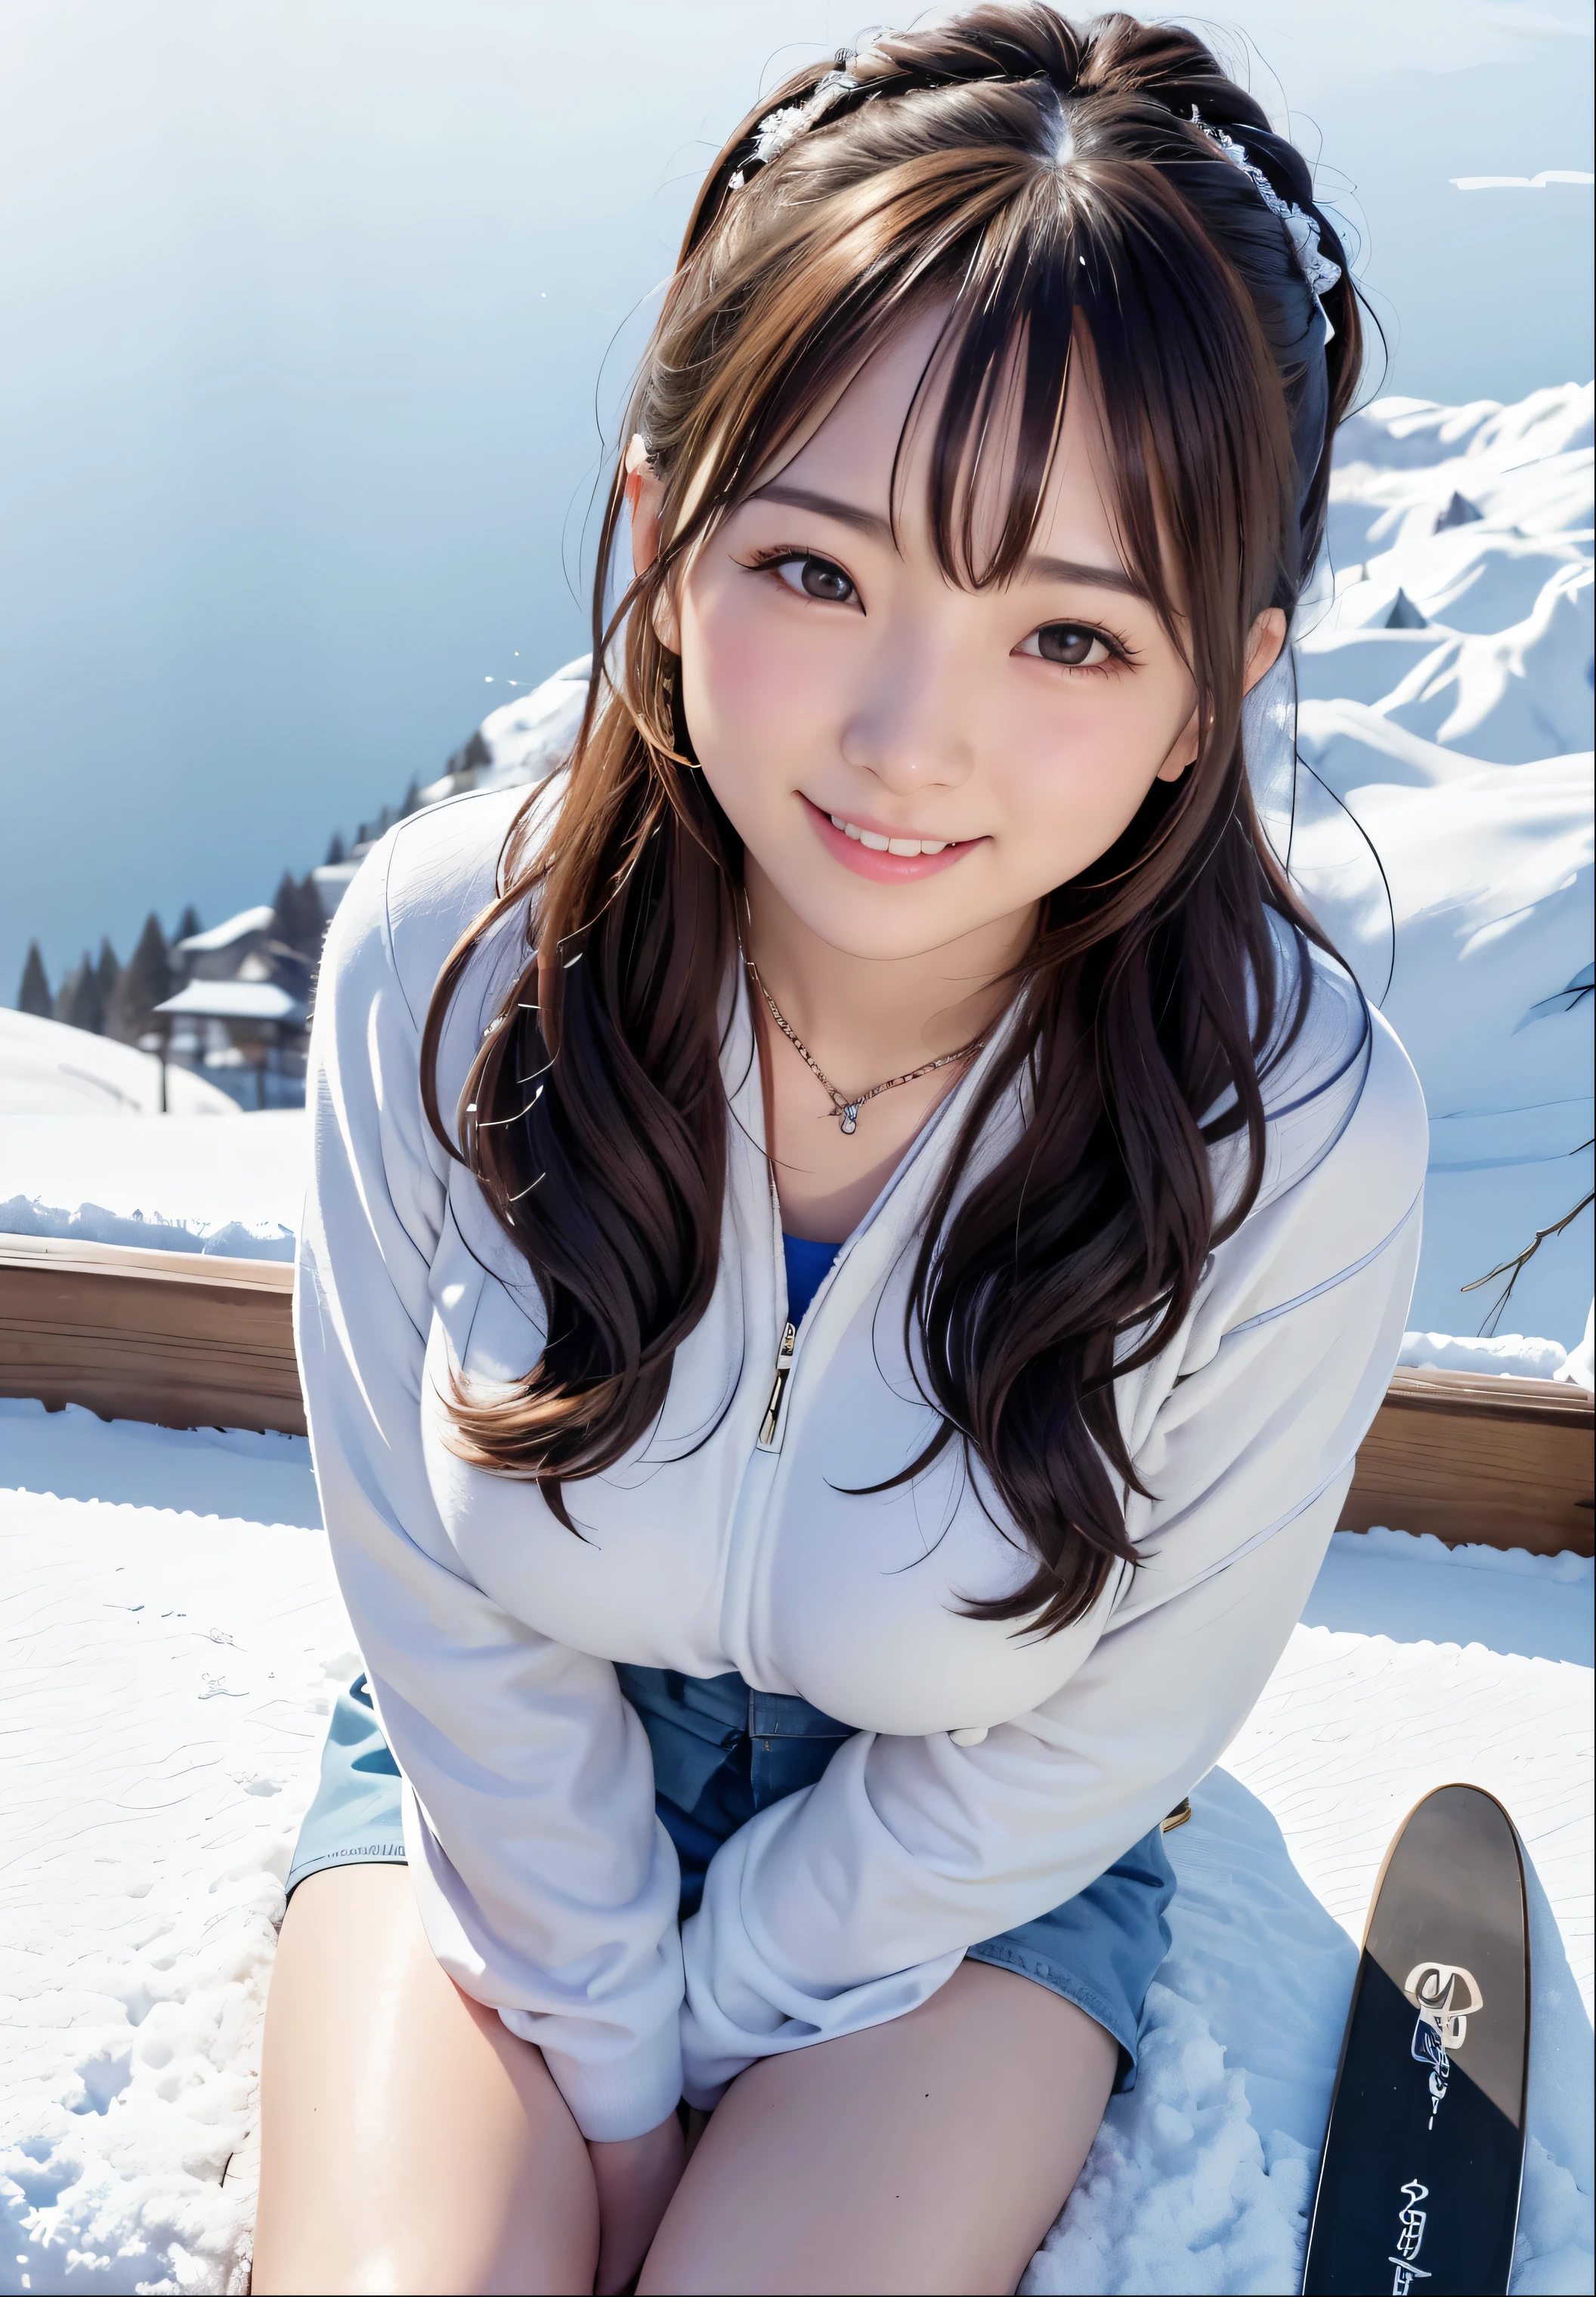 (最好的品質,傑作:1.3,Ultra-高的 resolution),(非常詳細、苛性線) (實際的:1.4, RAW 拍摄、)Ultra-實際的 Capture、非常詳細、Natural 滑雪n texture、傑作、(坐在雪山上的日本女人，手拿滑板和滑雪杆:1.3), 可愛的表情、表達幸福、14歲、高的: 160 厘米、年轻的面容、非常可愛、双尾、直髮、发带、黑髮、淡妝、項鍊、H罩杯巨乳、shiny t高的s、滑雪n arm、詳細背景、微笑、誘人的眼睛、解剖學上正確的、牛仔射击、注重细节、素晴らしい滑雪, 素晴らしい滑雪ed, 在山頂で, 在群山中, 嘉瑪·陳, 在山頂, 緊身衣服, sitting cutely 在山頂, 最重要的是, 在雪里, 滑雪, 雪在我身上堆积